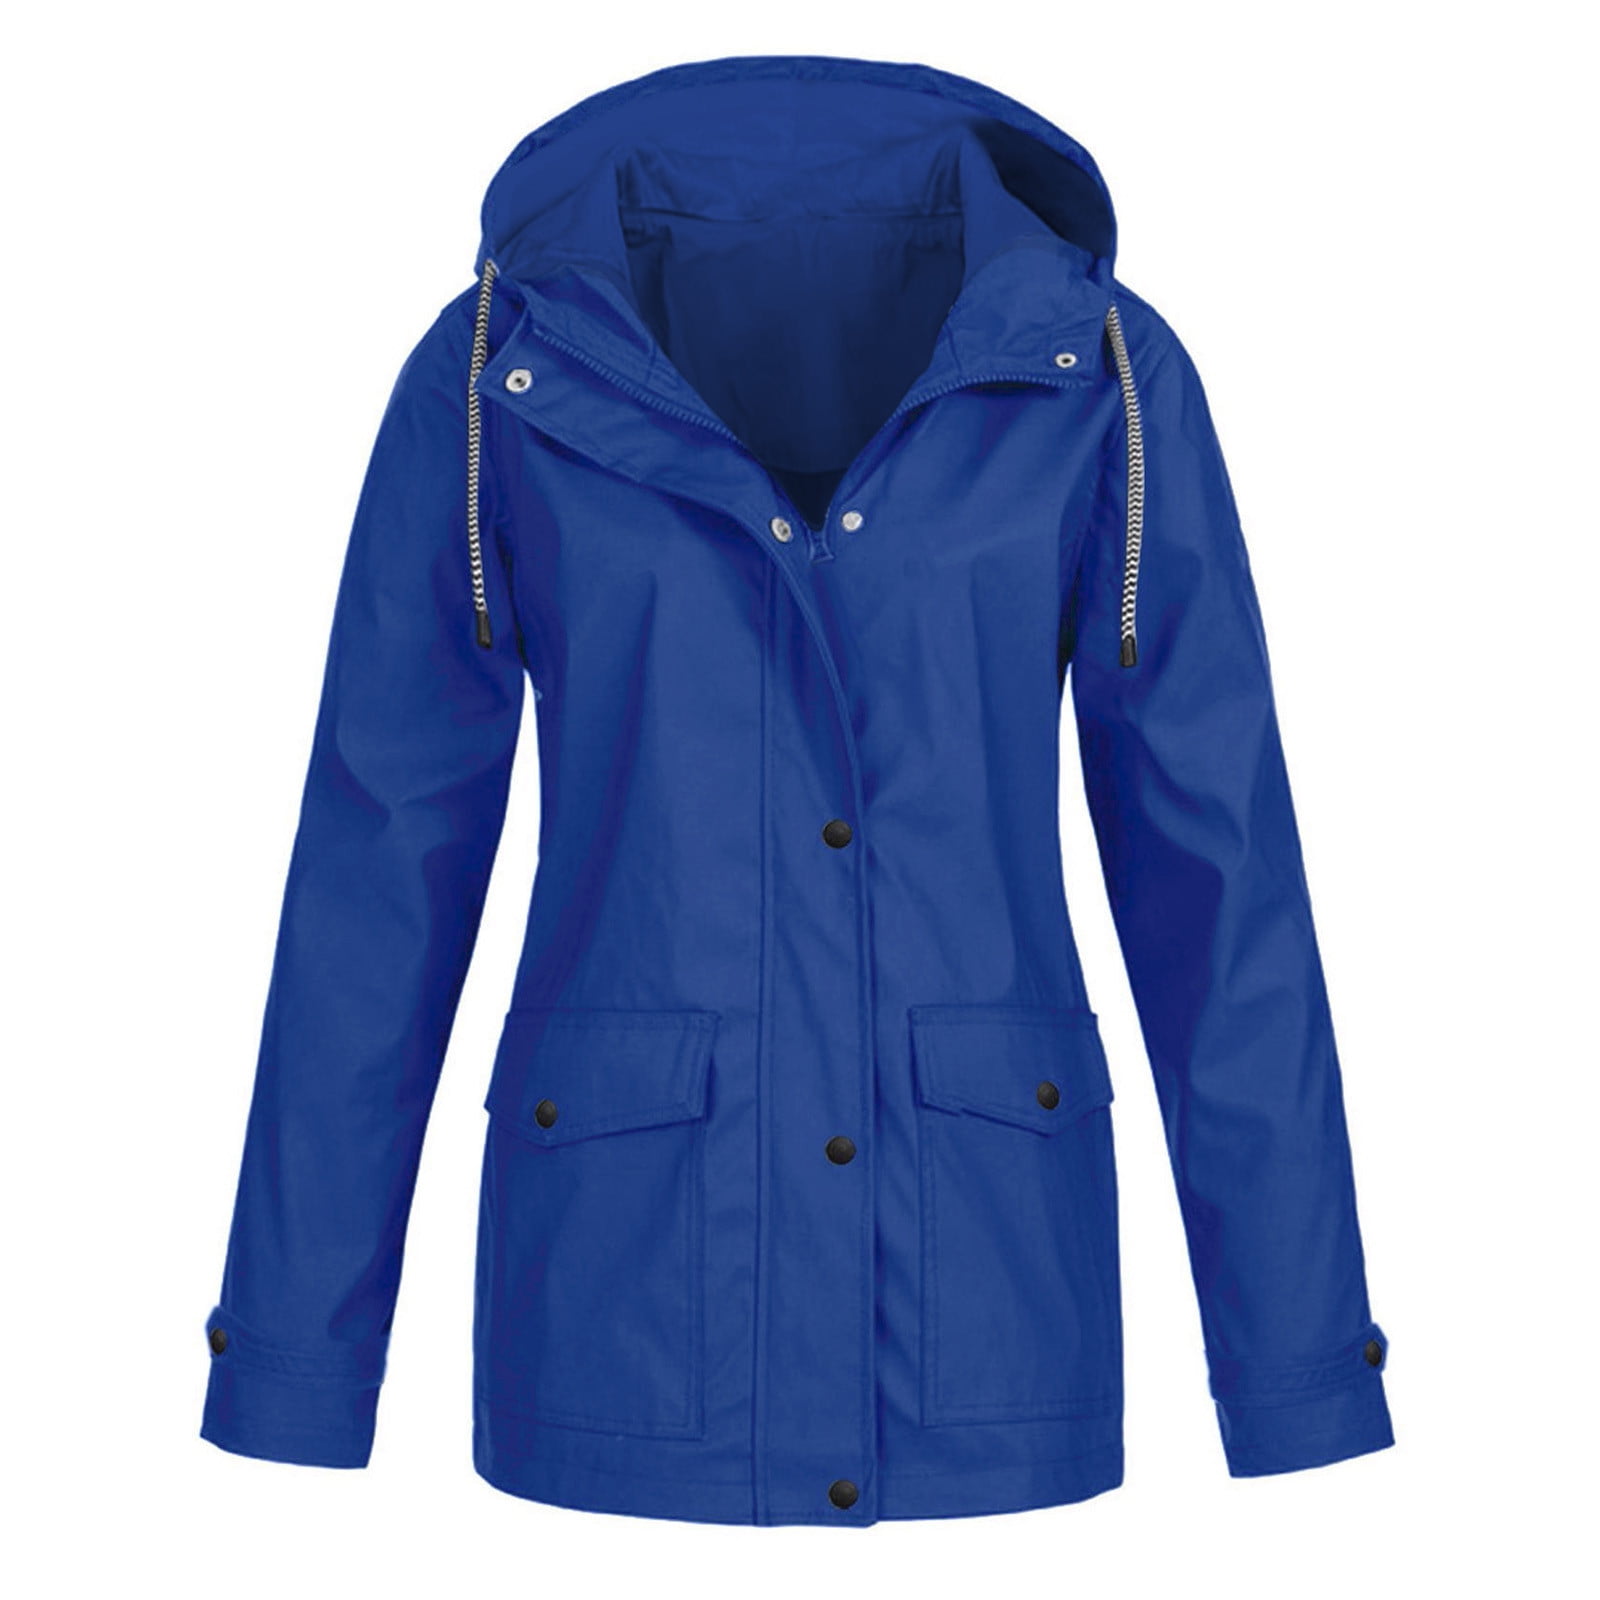 Women’s Waterproof Hooded Rain Jacket Lightweight Zip Up Outdoor ...